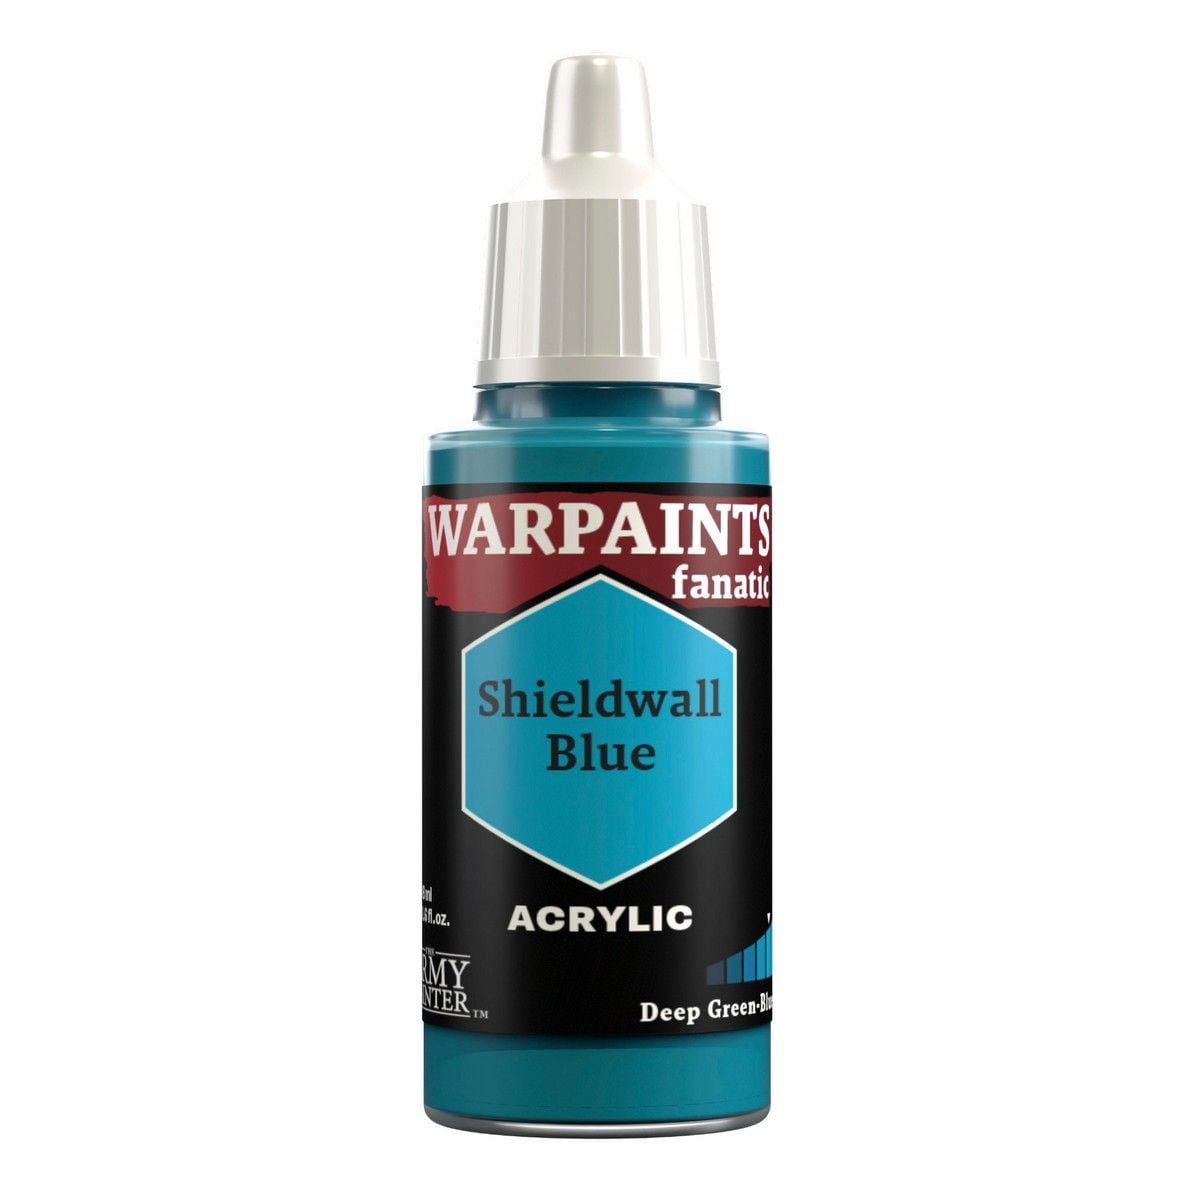 Warpaints Fanatic: Shieldwall Blue - 18ml